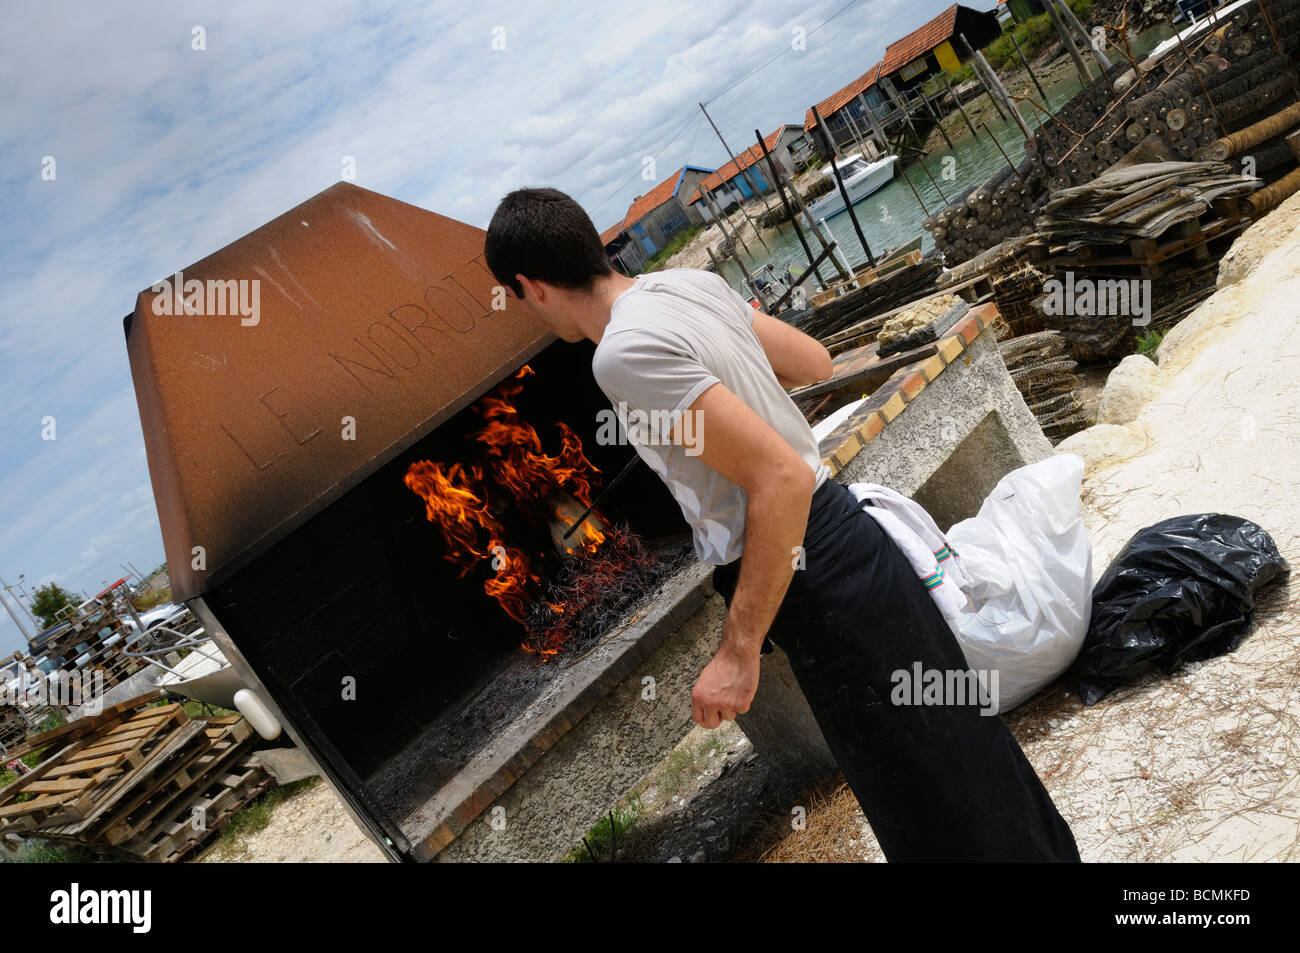 Stock Foto von einem Mann Kochen Miesmuscheln auf offenem Feuer in le Tremblade in Frankreich. Stockfoto